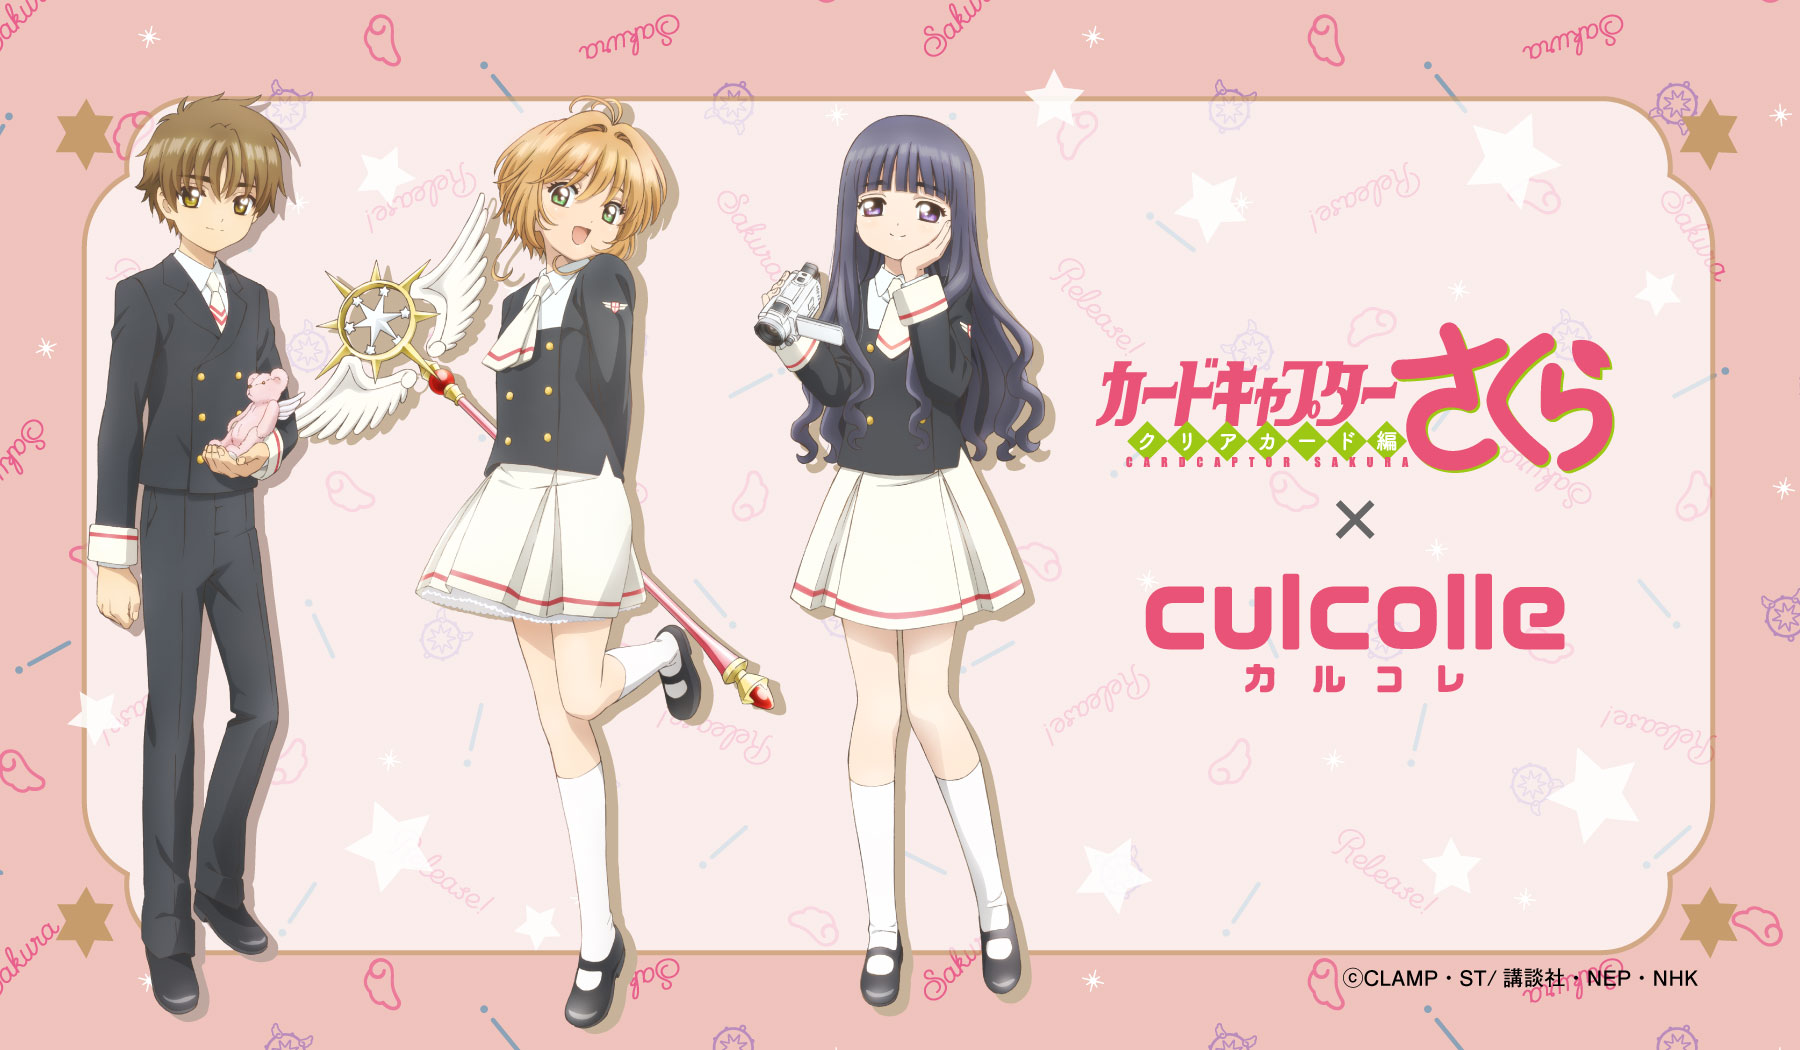 TVアニメ「カードキャプターさくら」×「culcolle」